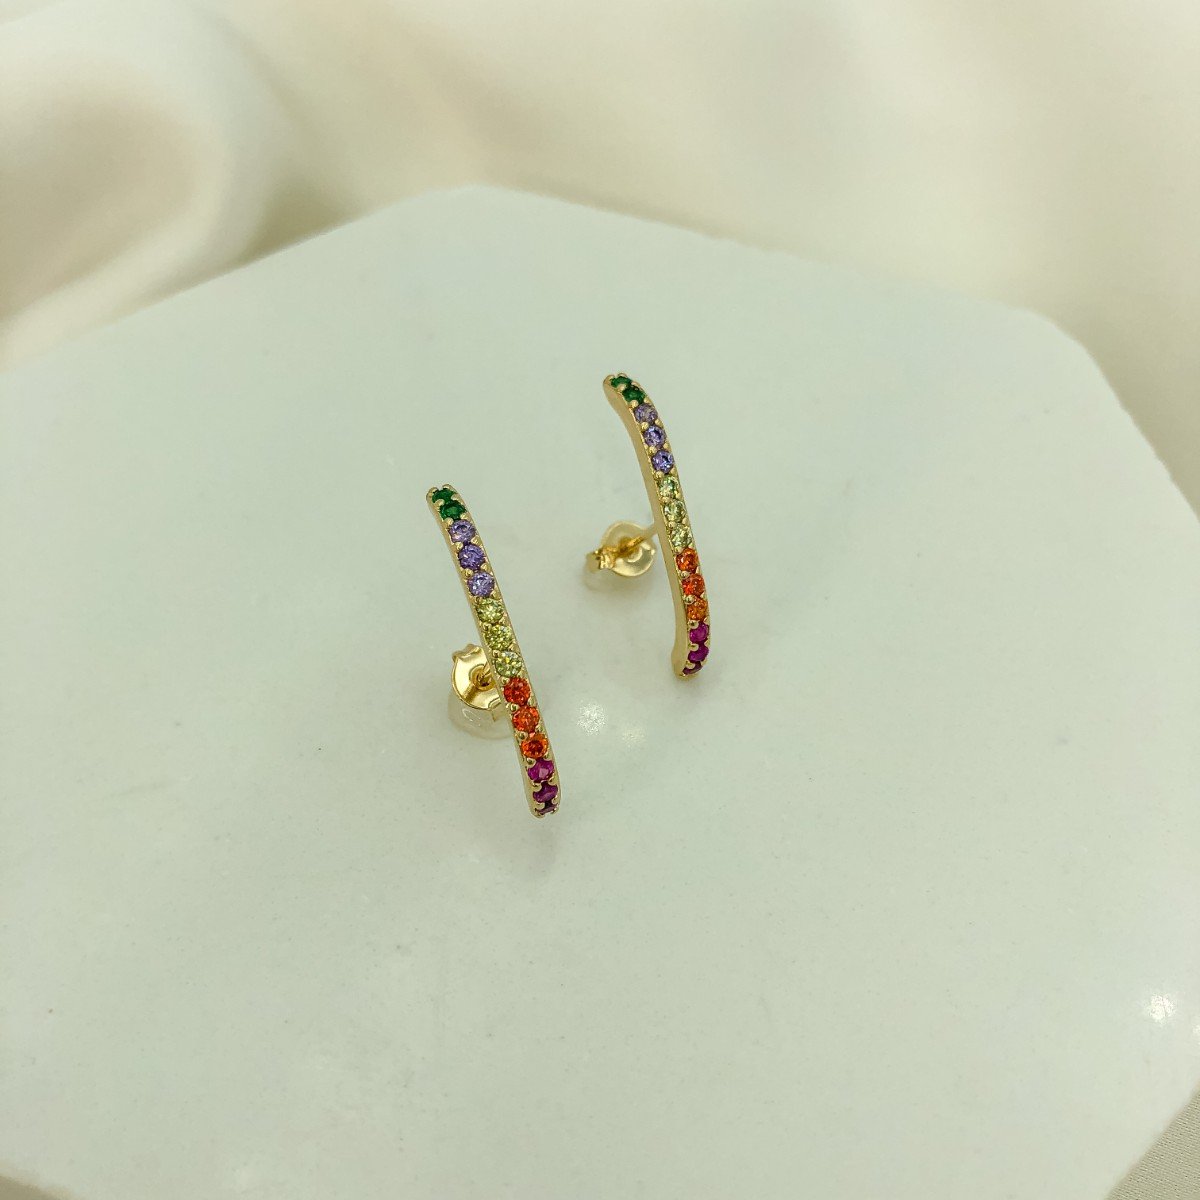 Brinco Ear Hook Cravejado em Zircônias Coloridas Banhado em Ouro 18k